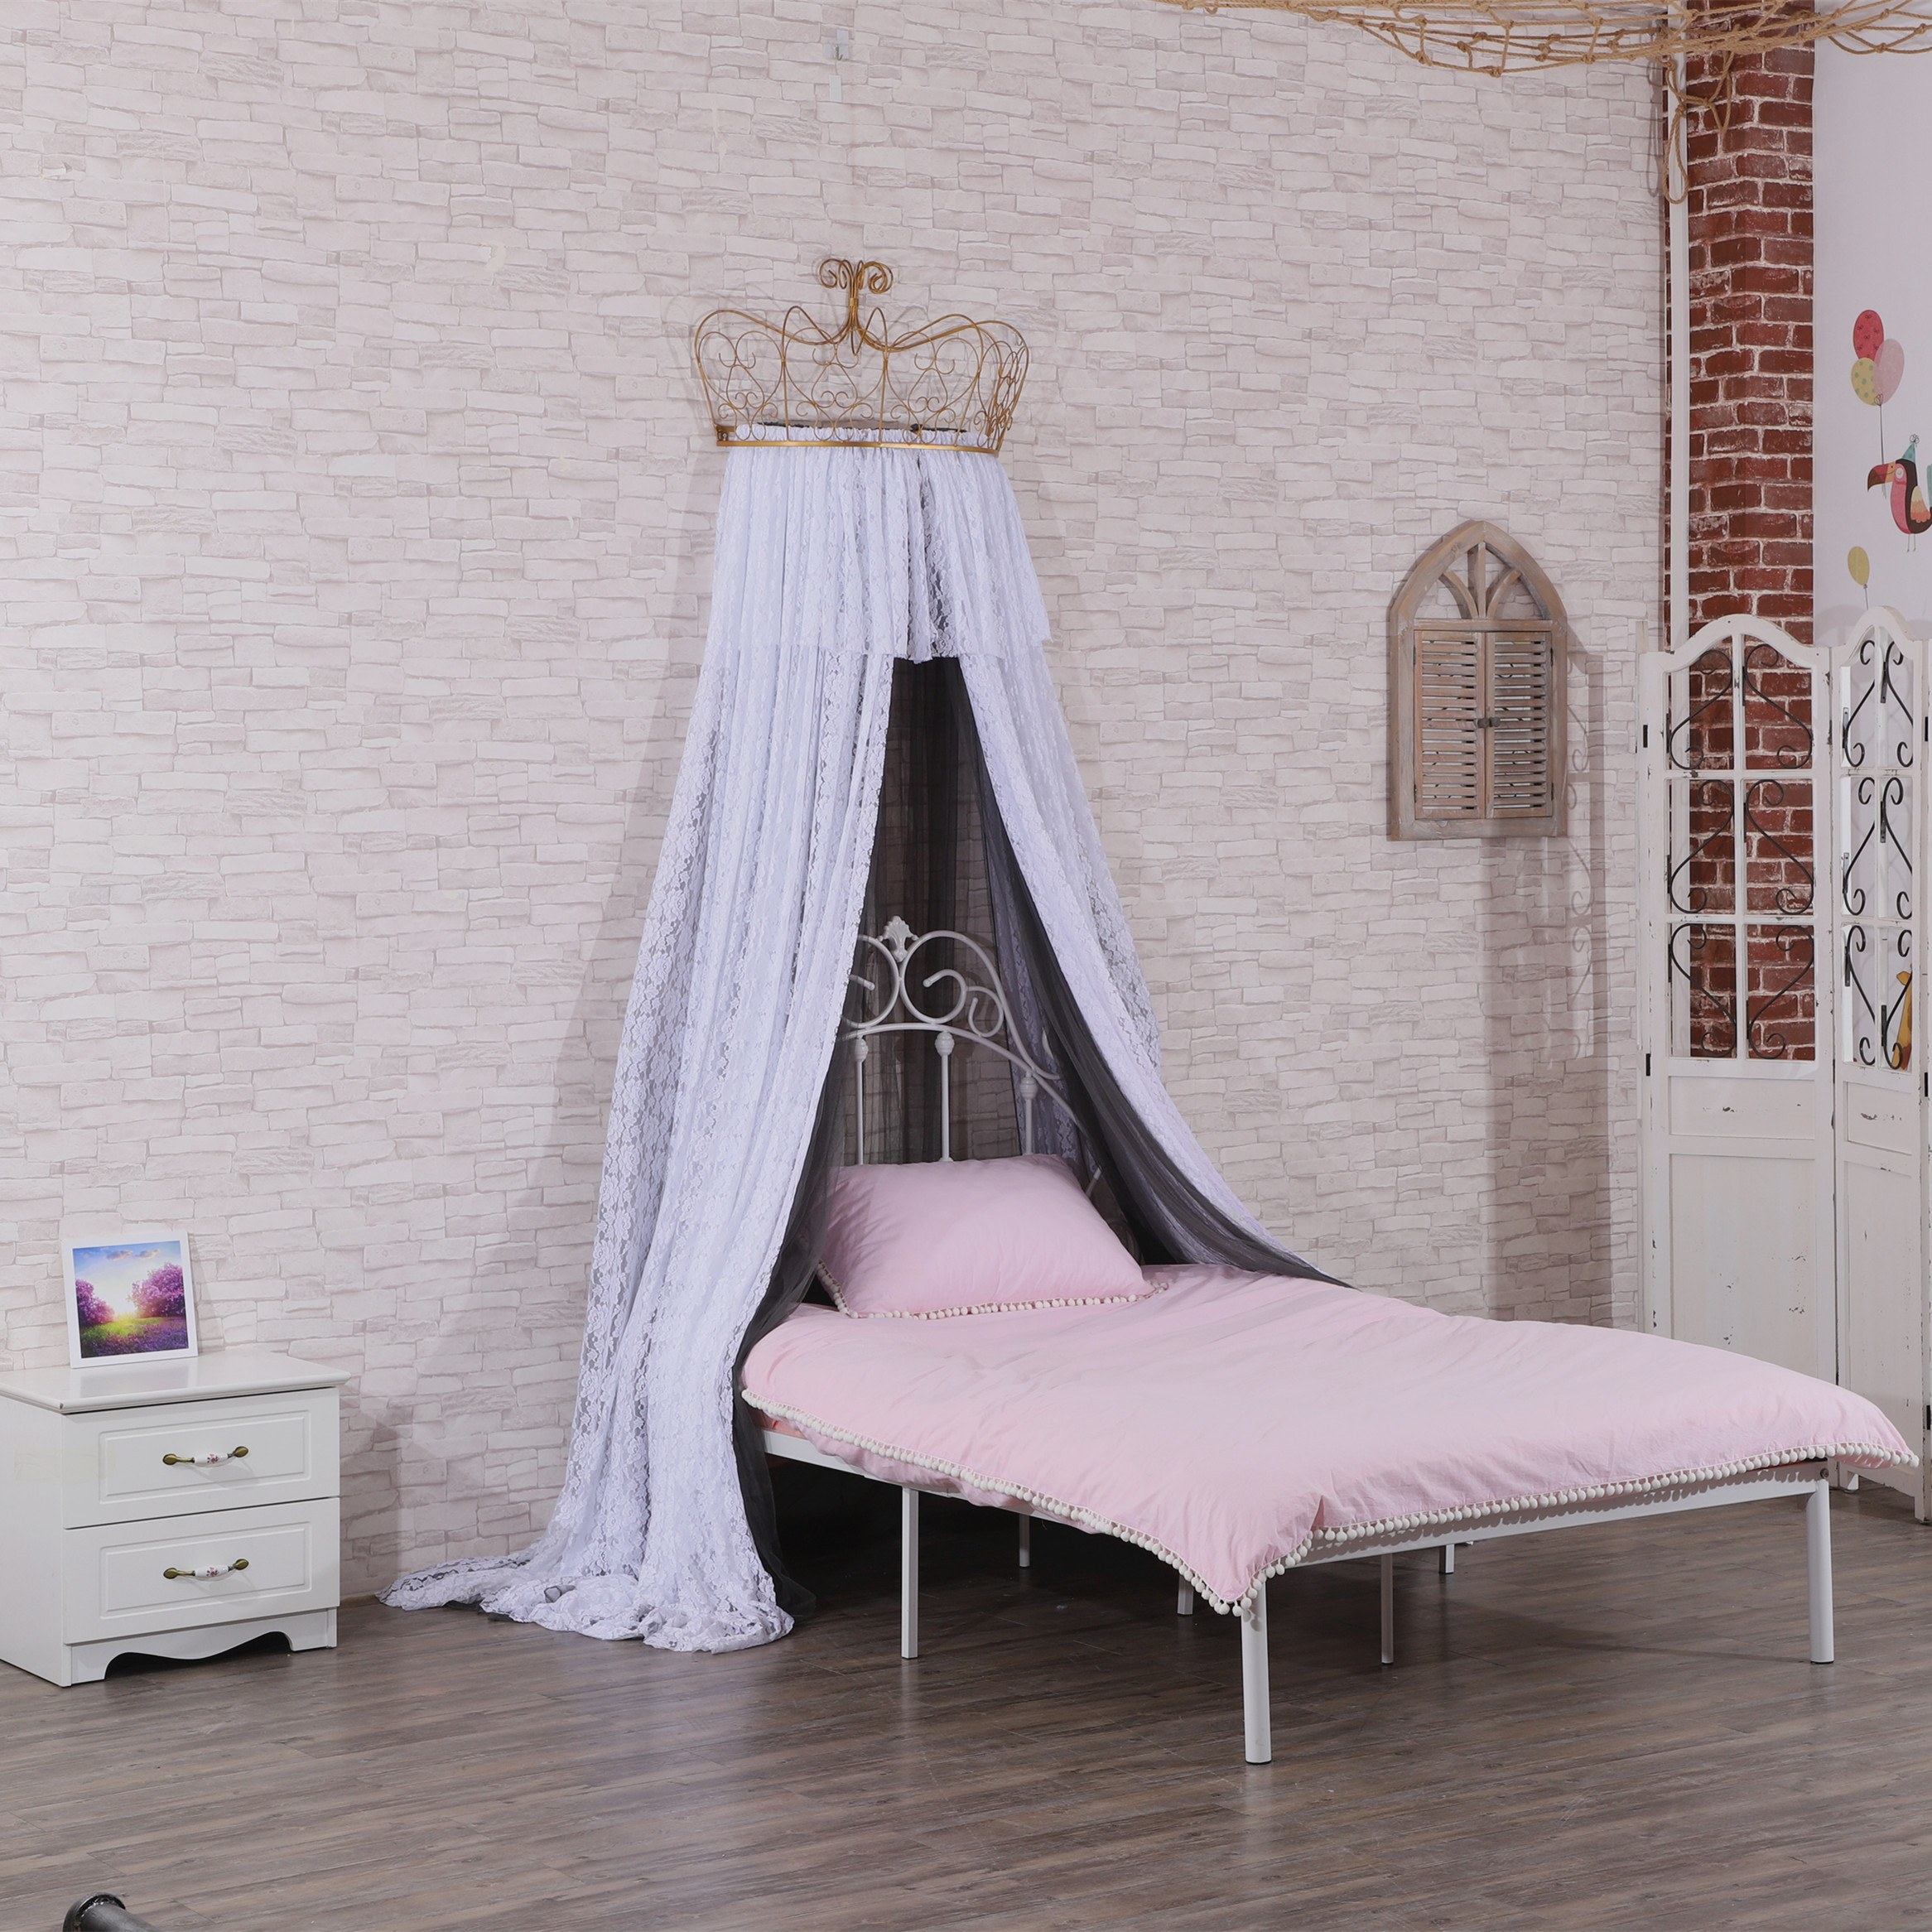 Princess Crown Lace dekorative Bett Baldachin zweifarbig zweilagige Mesh-Tuch Gefühl voller eleganter Mädchen Bett Vorhang Moskitonetze